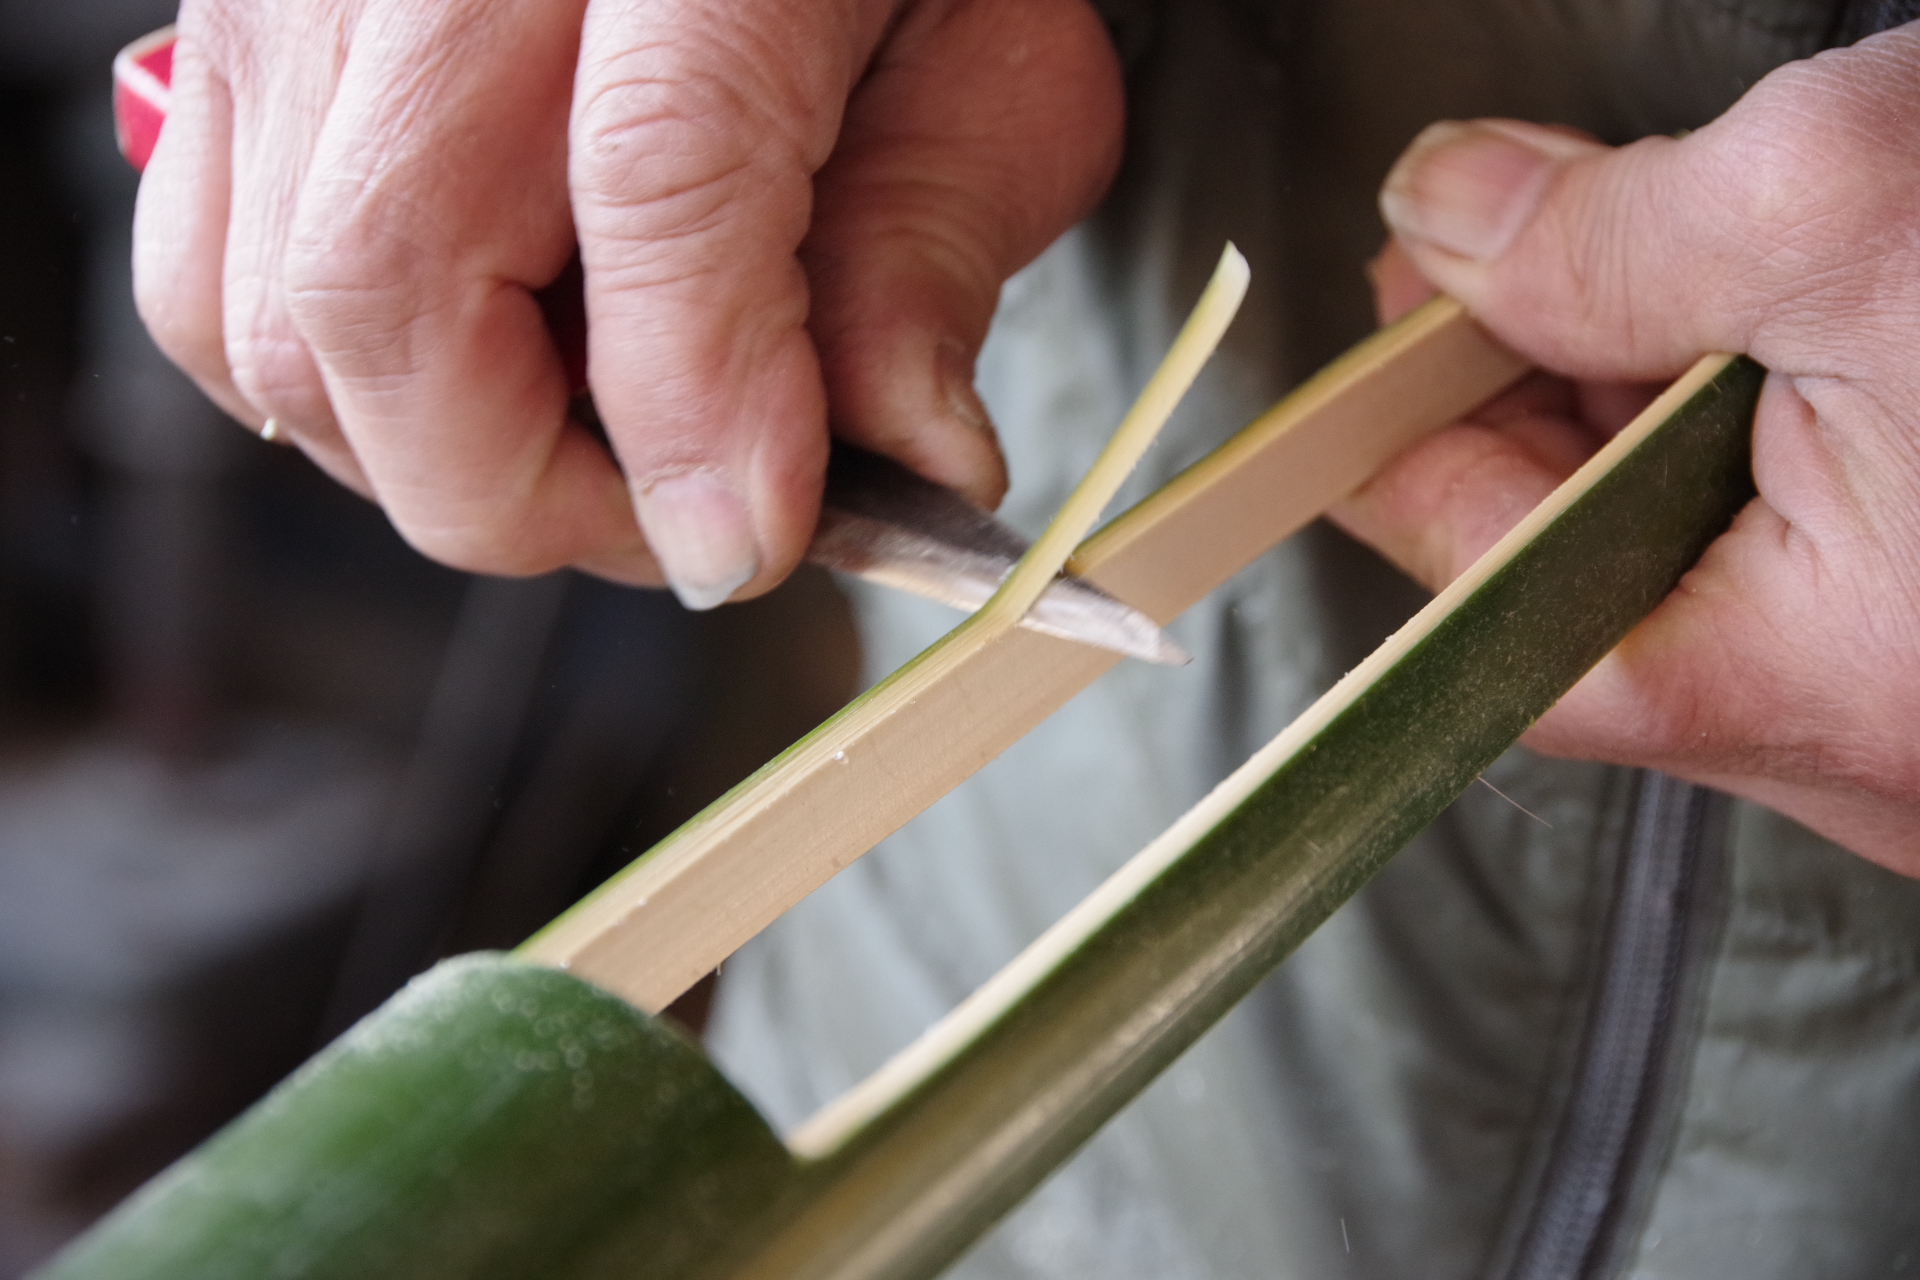 竹細工 たけざいく を知る 竹細工の製品 おもちゃ 体験スポット 粋 Iki Part 2